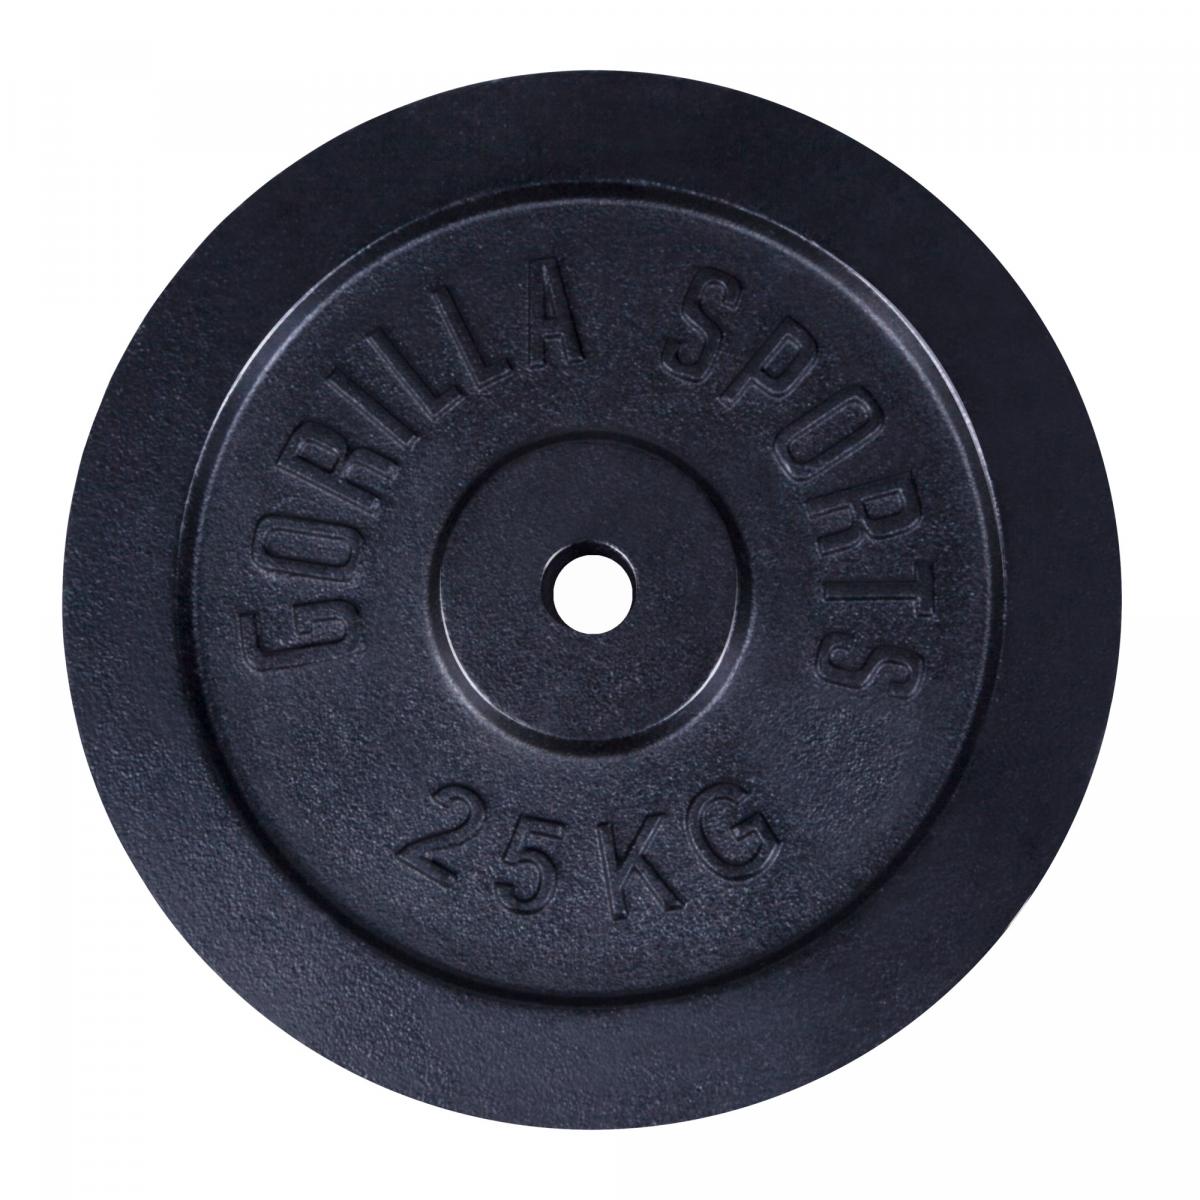 1 disque de poids en fonte noire de 25 kg - Ã 31mm d'alÃ©sage